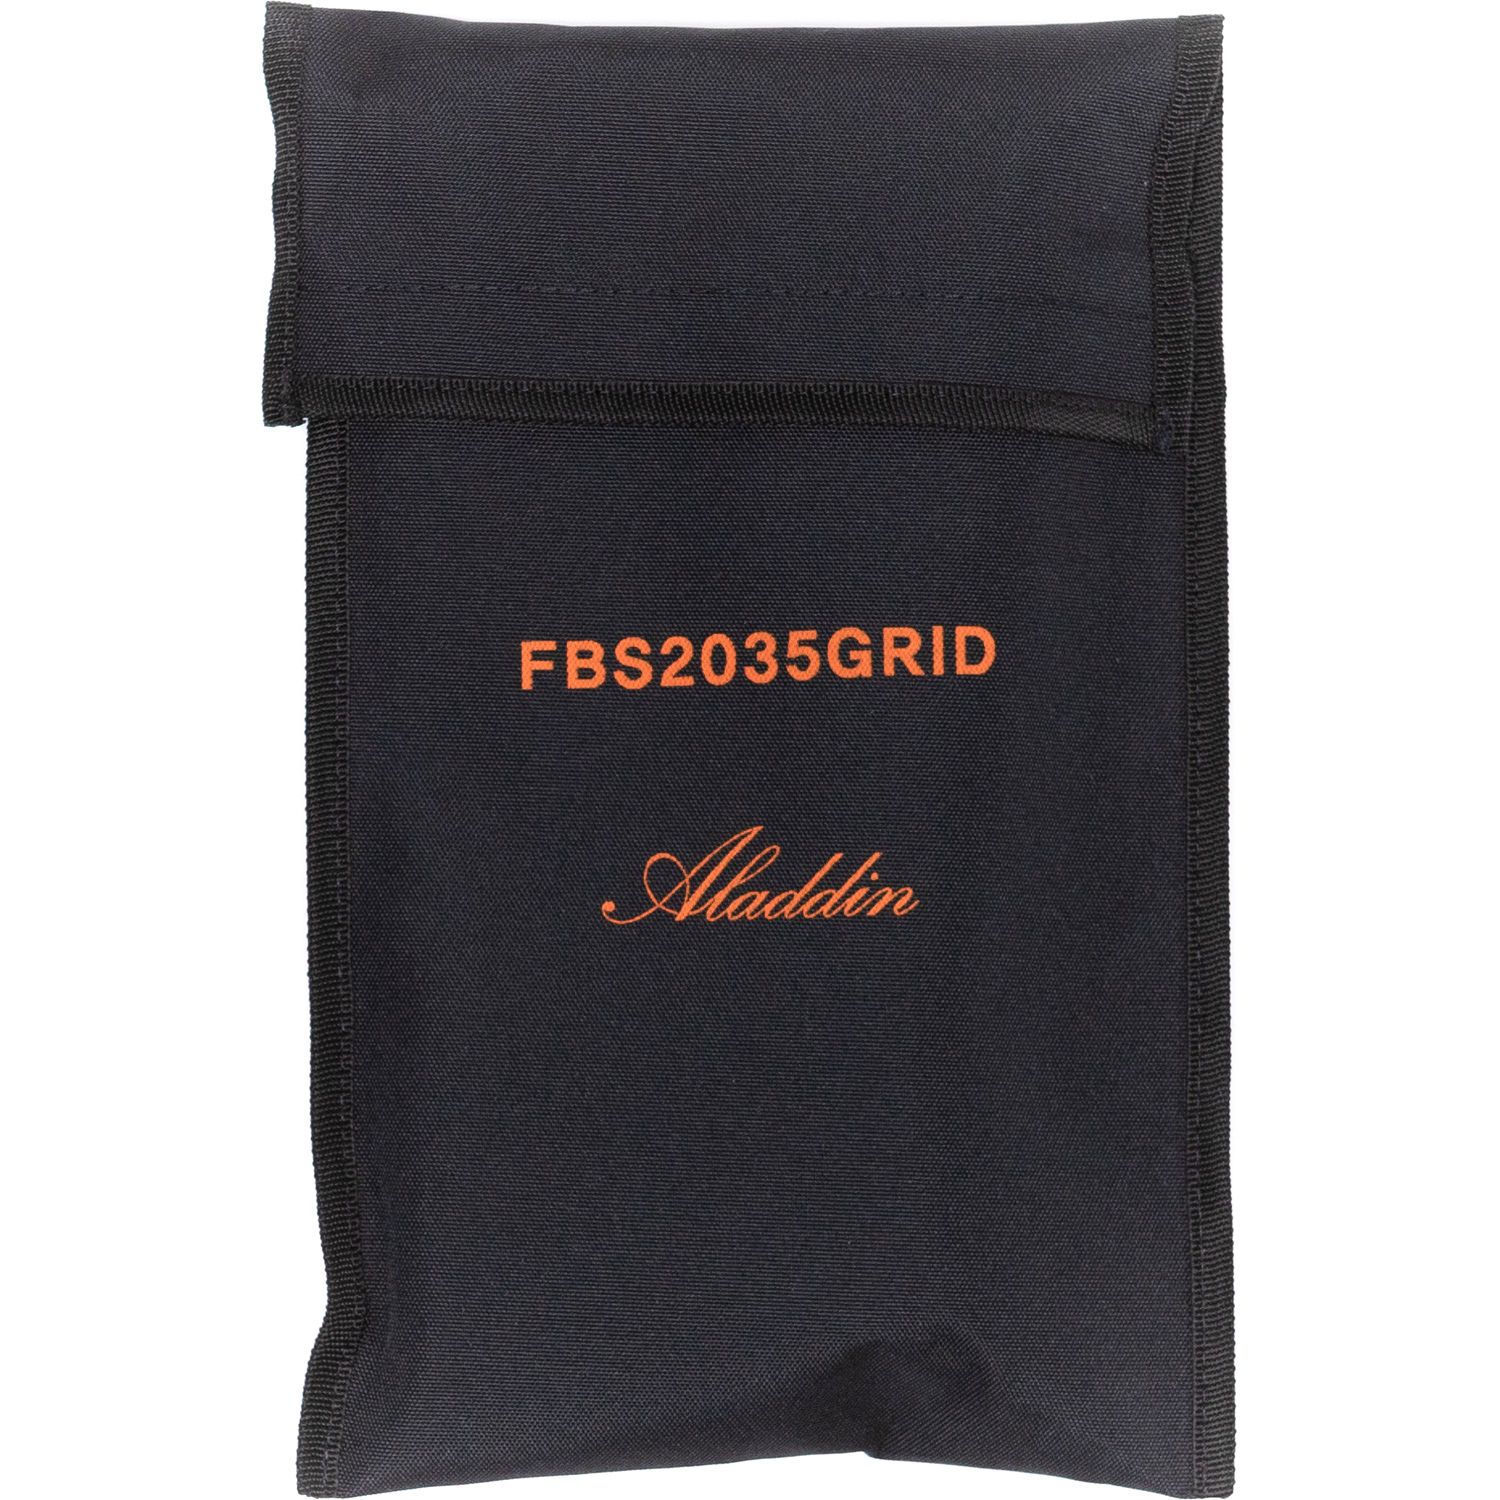 ALADDIN - Grille pour Fabric Lite 200 et 350